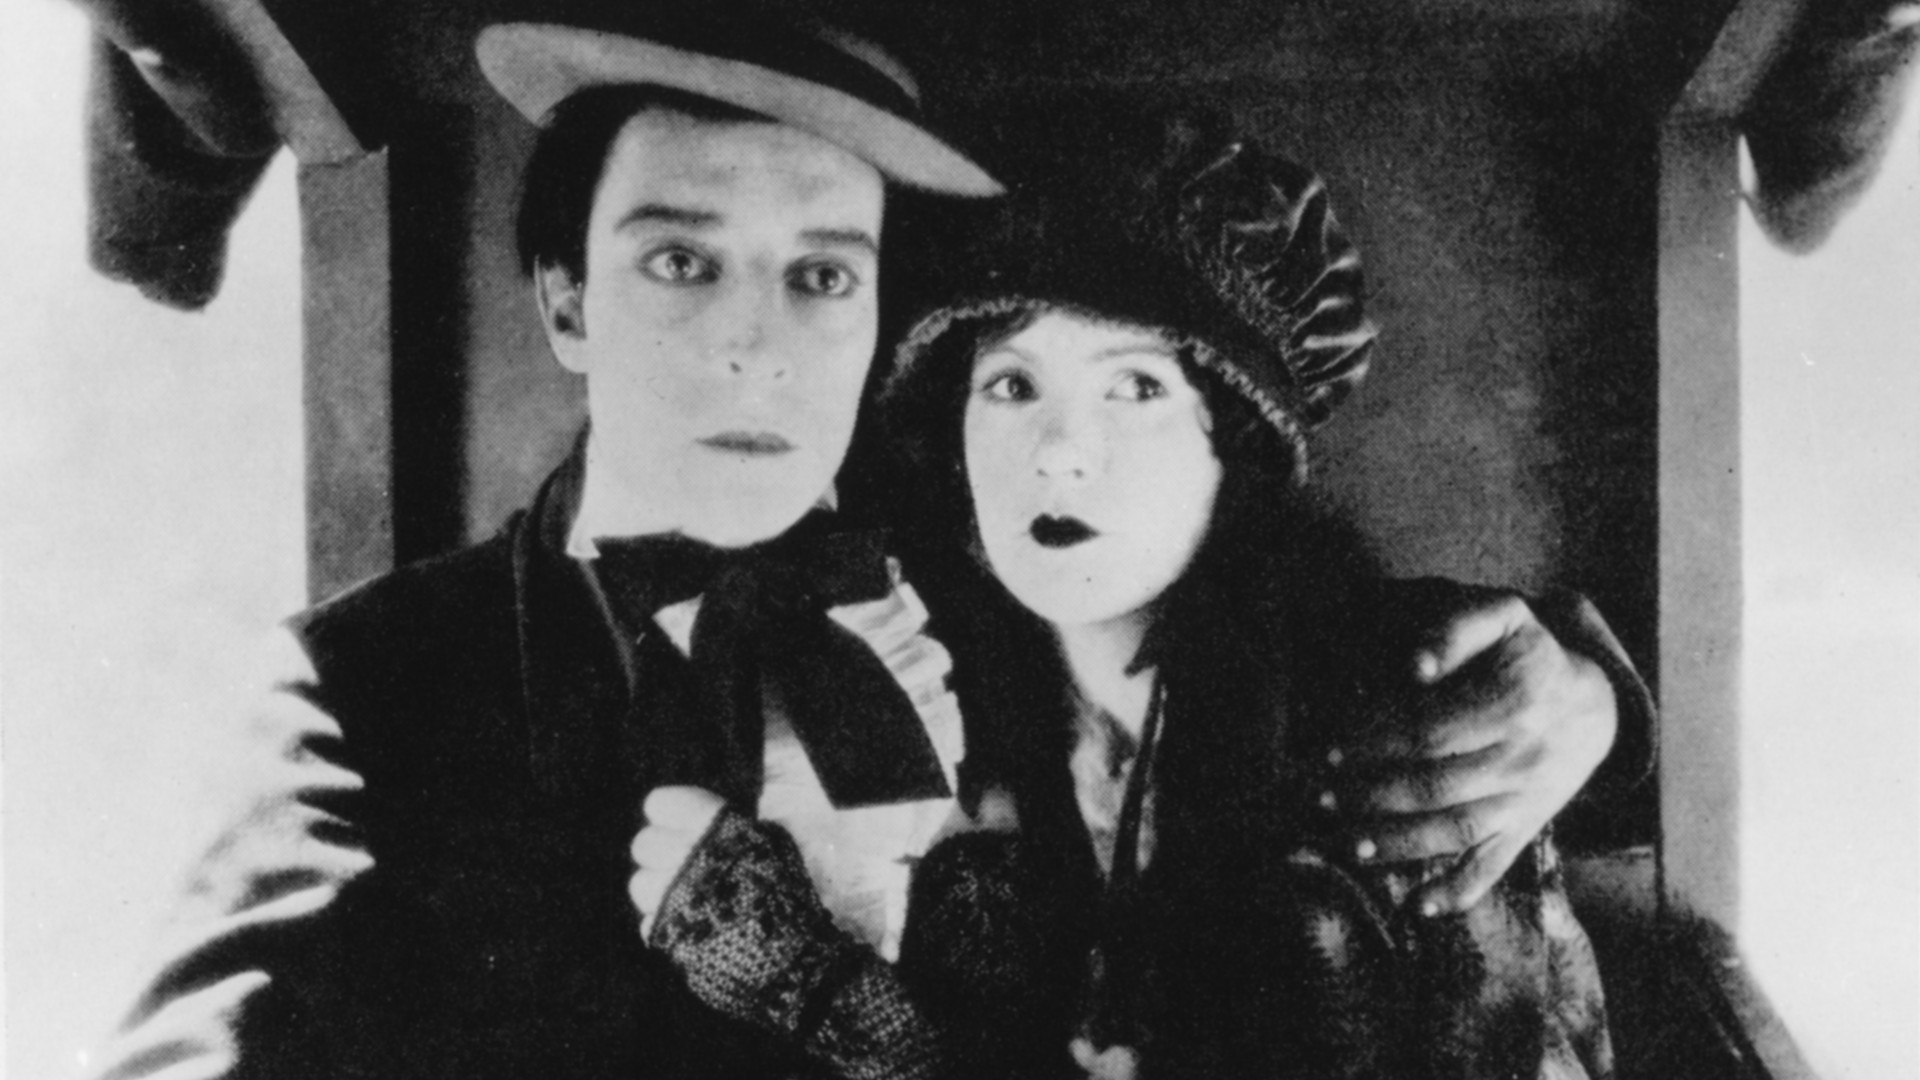 Filmstill aus Our Hospitality: Ein Mann mit Hut, Anzug und Fliege hält eine Frau, ebenfalls mit Hut, im Arm.